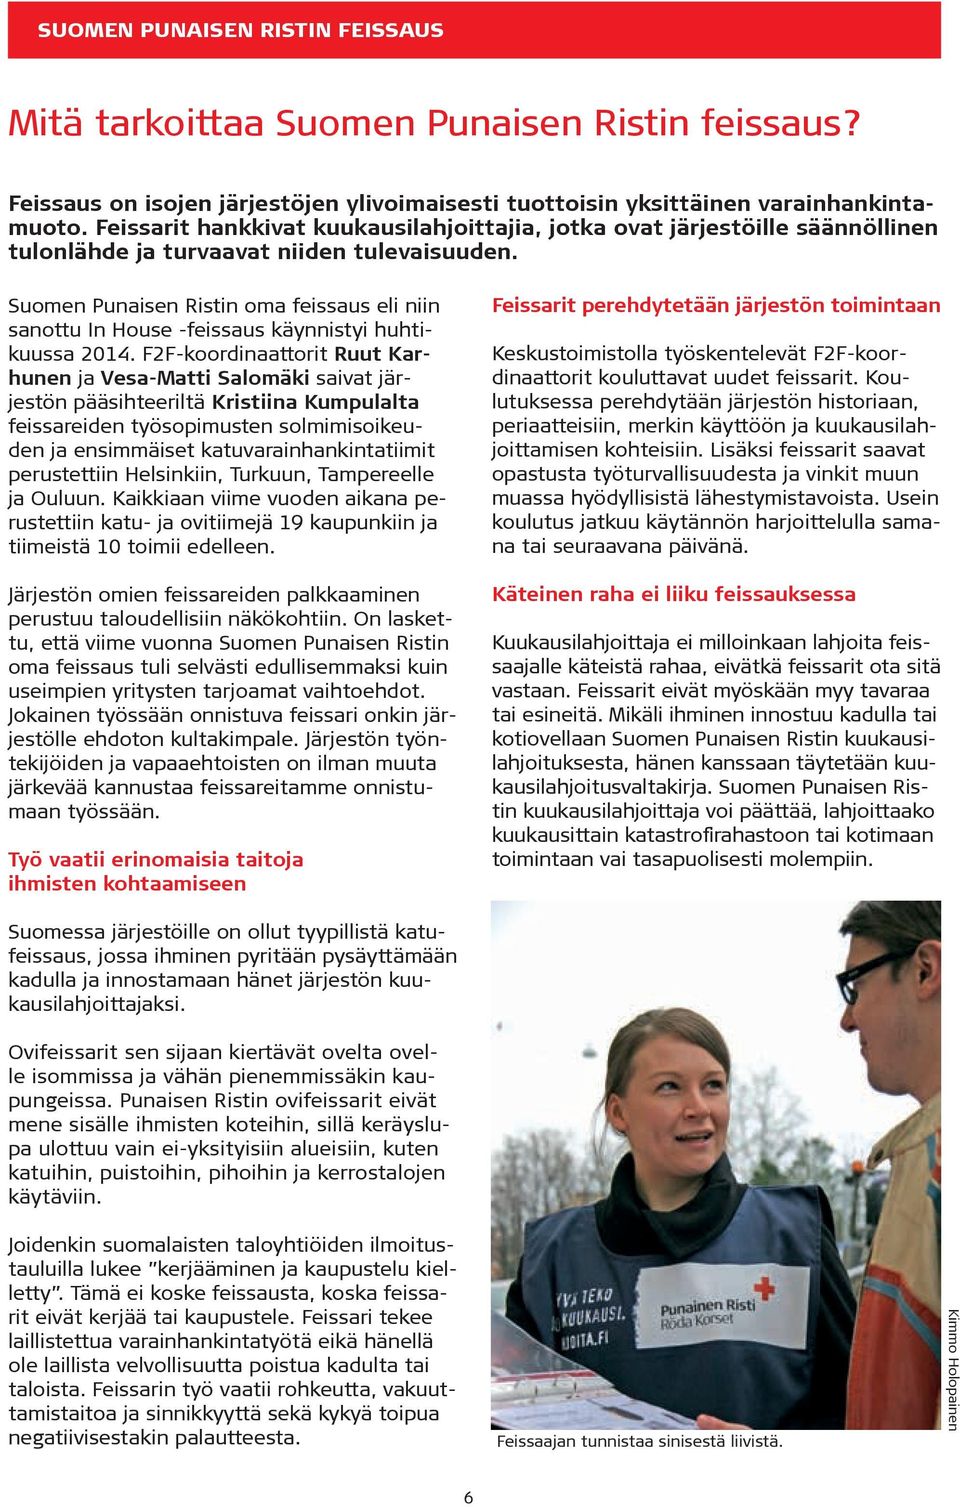 Suomen Punaisen Ristin oma feissaus eli niin sanottu In House -feissaus käynnistyi huhtikuussa 2014.